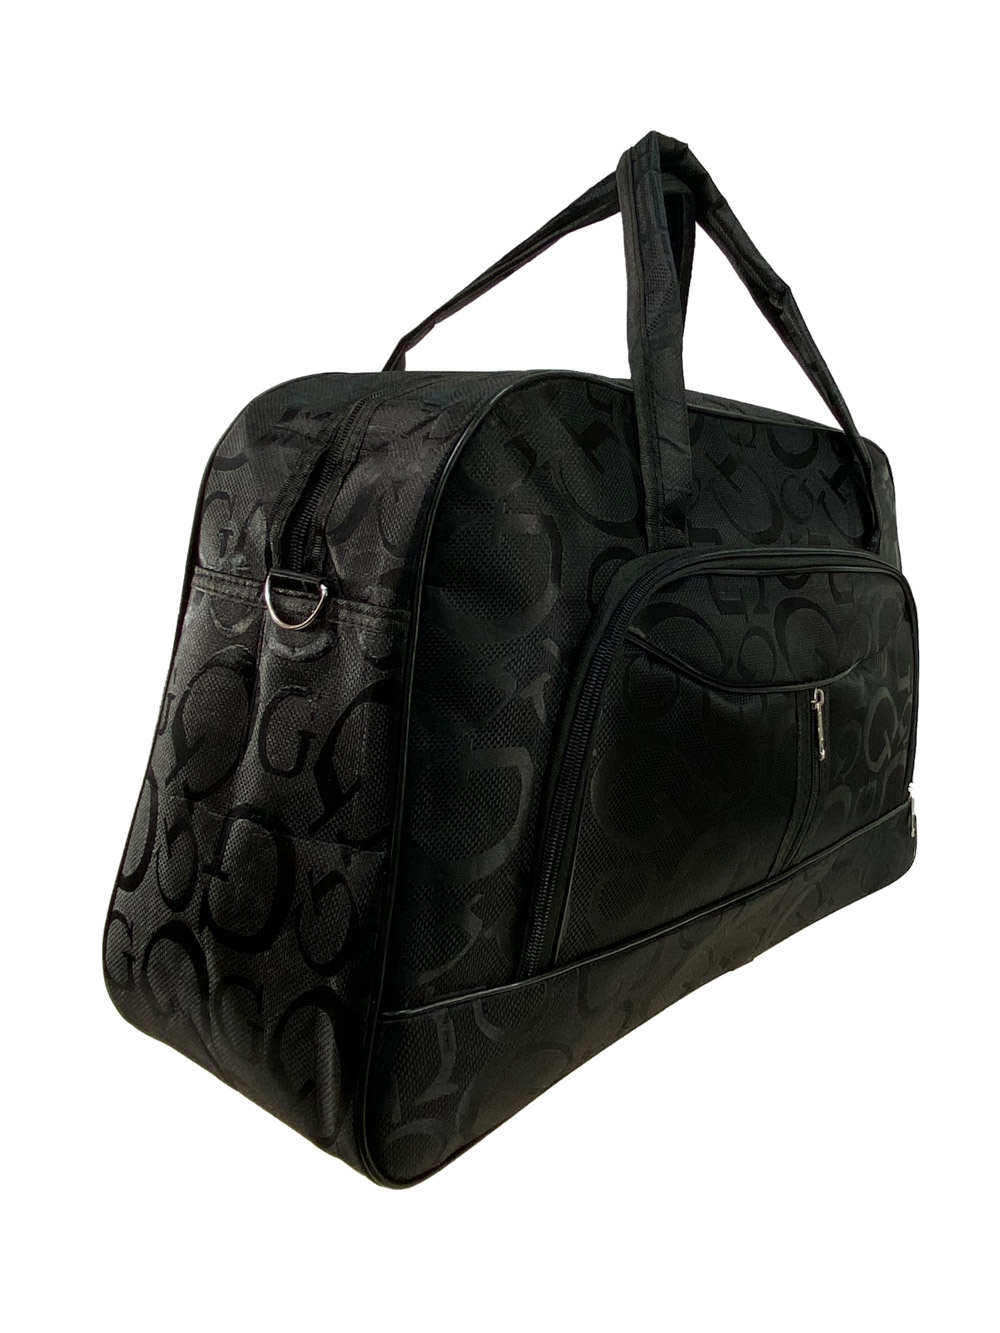 Женская дорожная сумка из текстиля с принтом, цвет чёрный